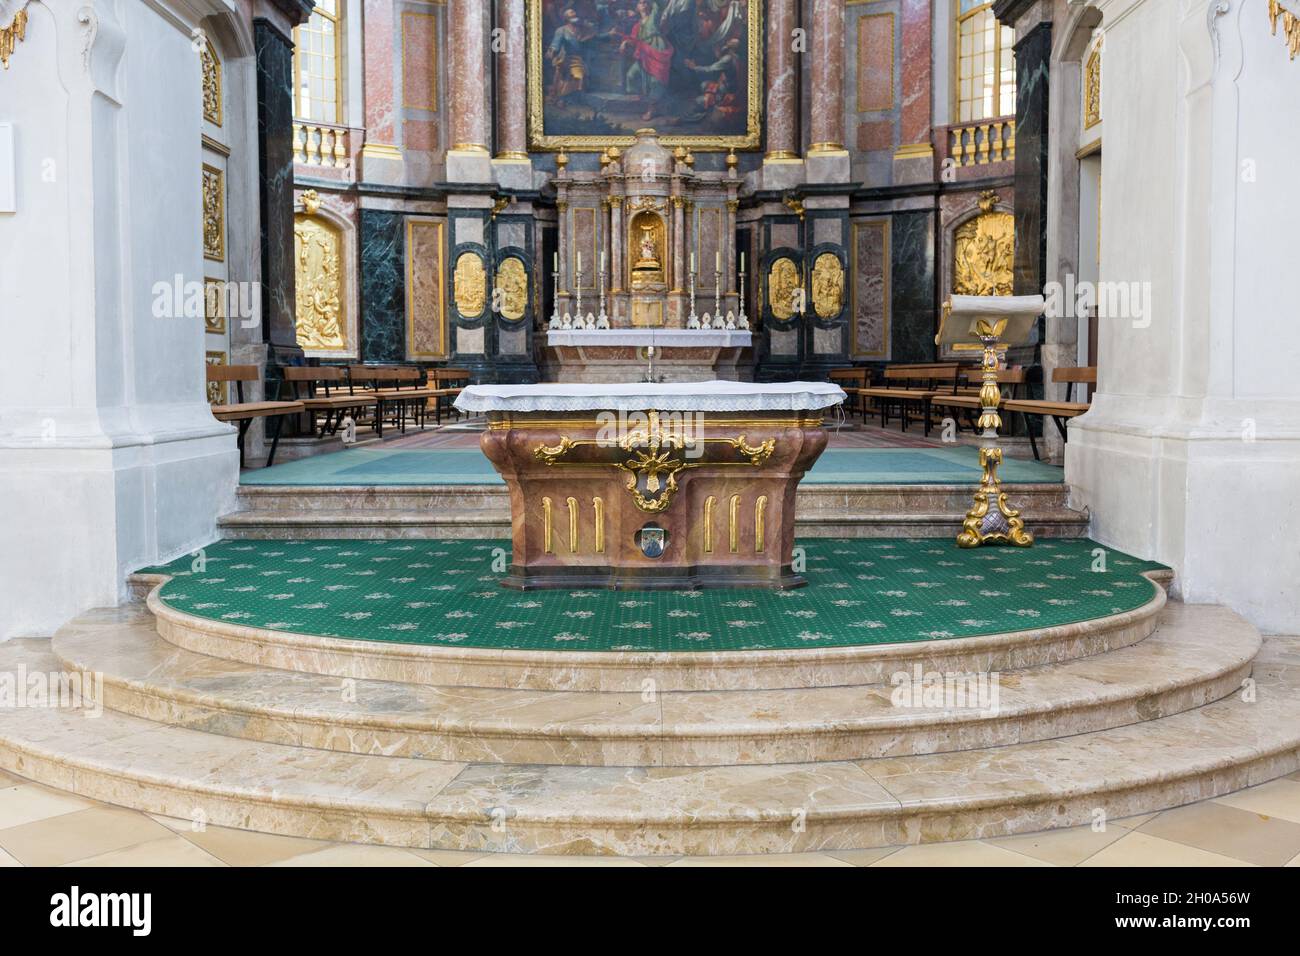 Ettal, Allemagne - 26 février 2021 : vue sur l'autel principal de la basilique du monastère de l'Ettal.Autel d'une église catholique typique de la haute-bavière. Banque D'Images